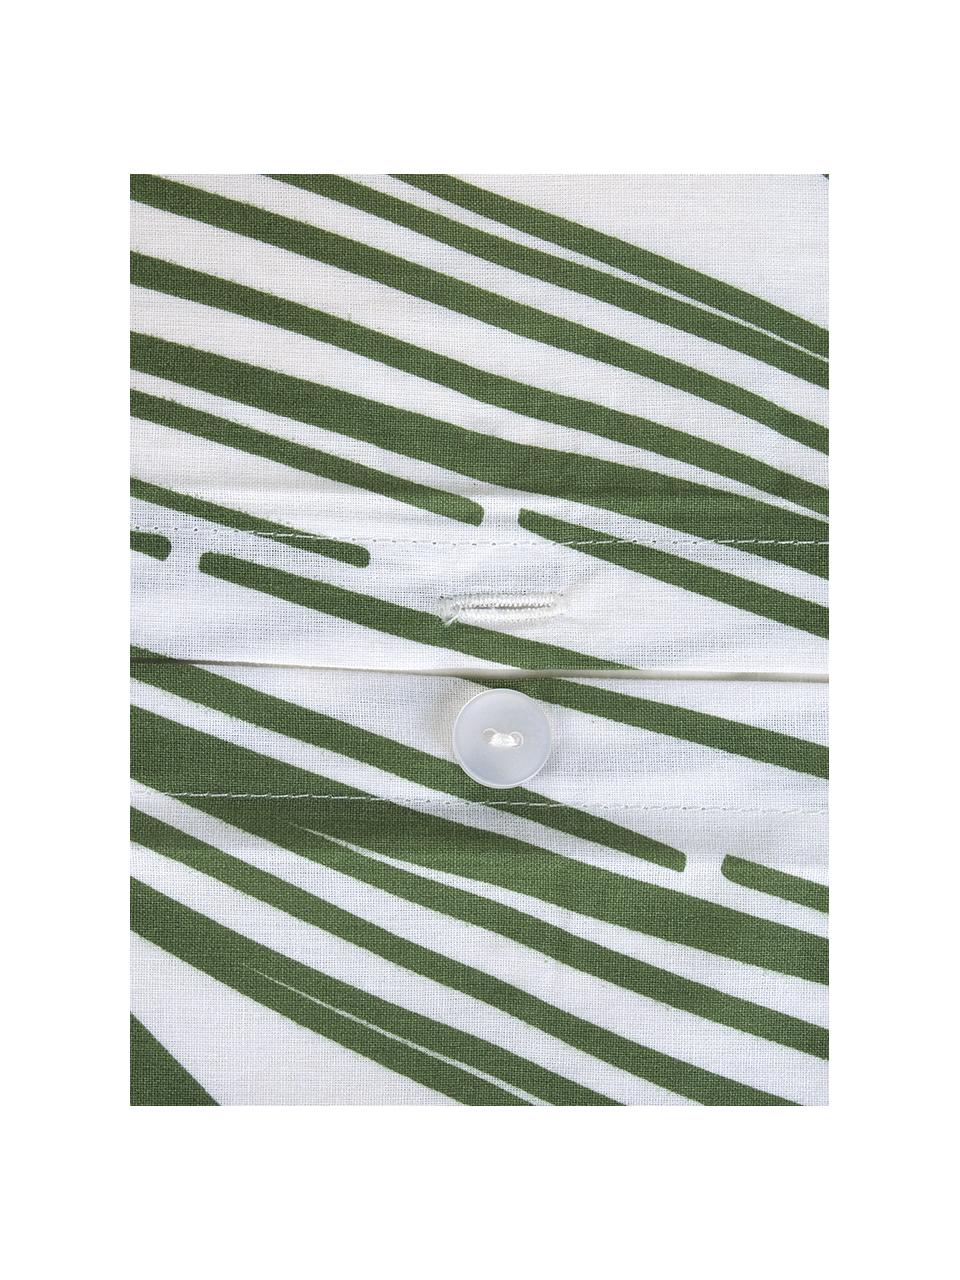 Baumwoll-Bettwäsche Alessa mit Blätterprint, Webart: Renforcé Fadendichte 144 , Weiss, Hellgrün, Dunkelgrün, 135 x 200 cm + 1 Kissen 80 x 80 cm